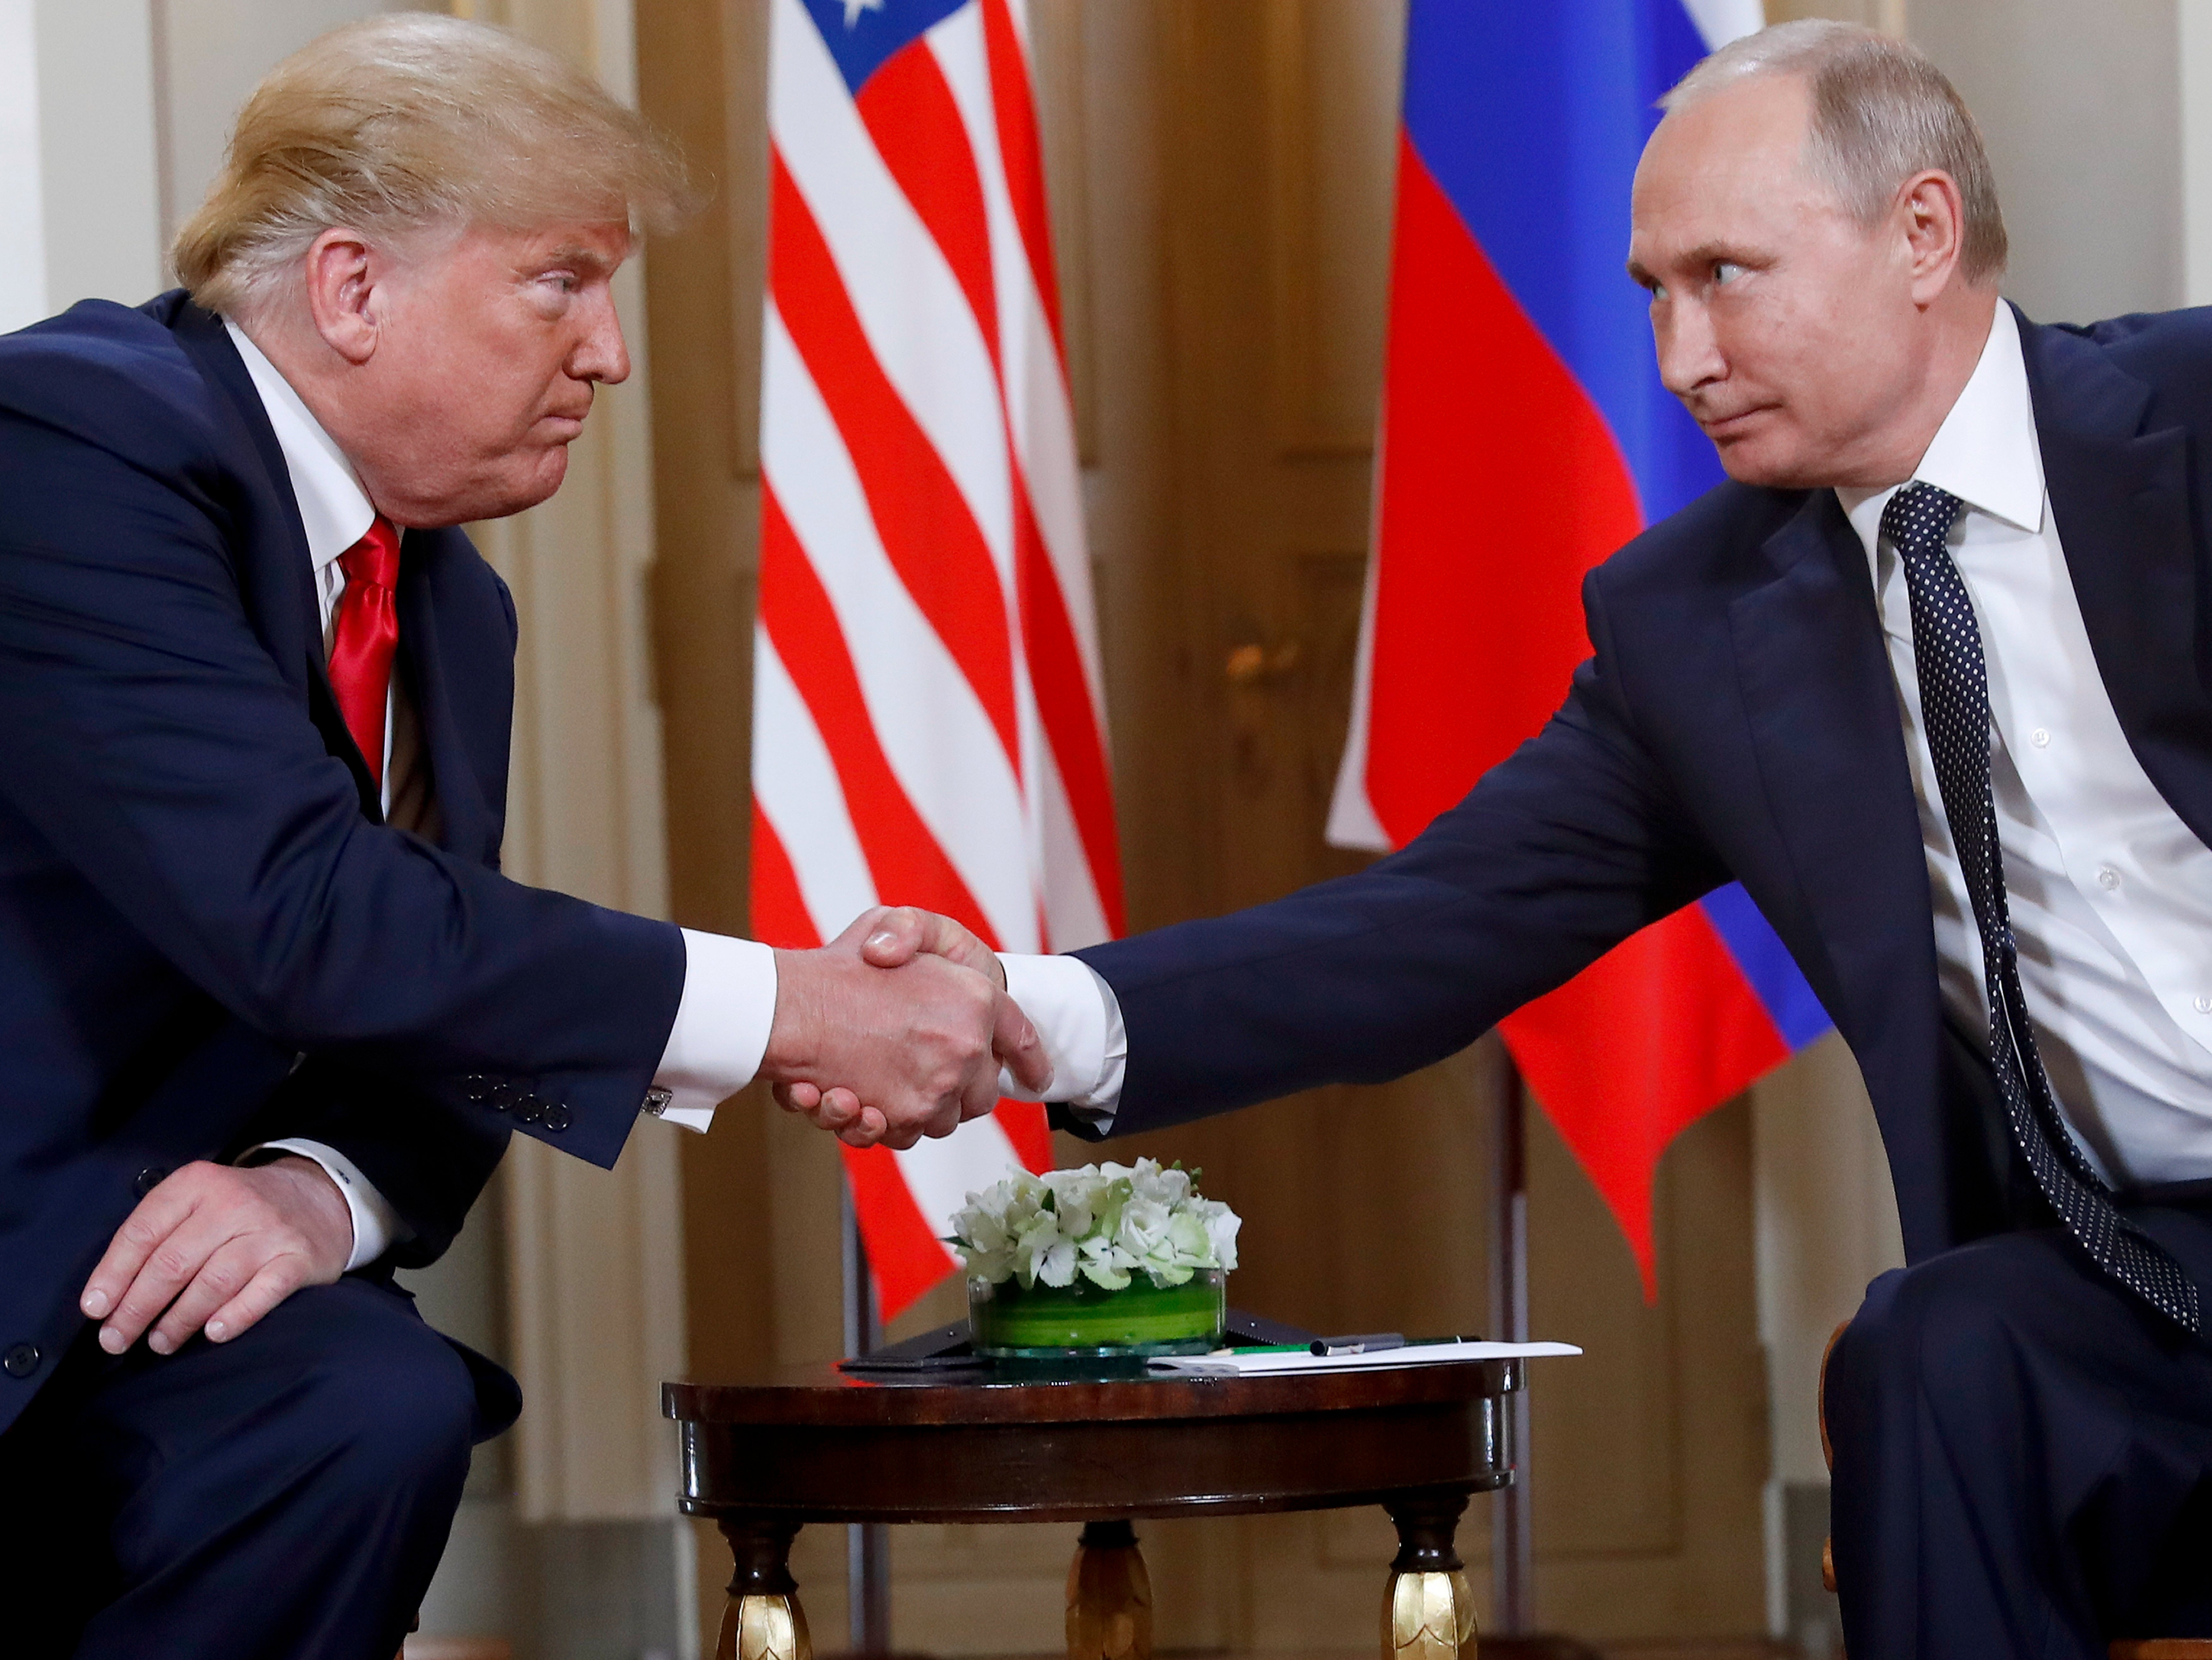 Trump and Putin shook hands in 2018